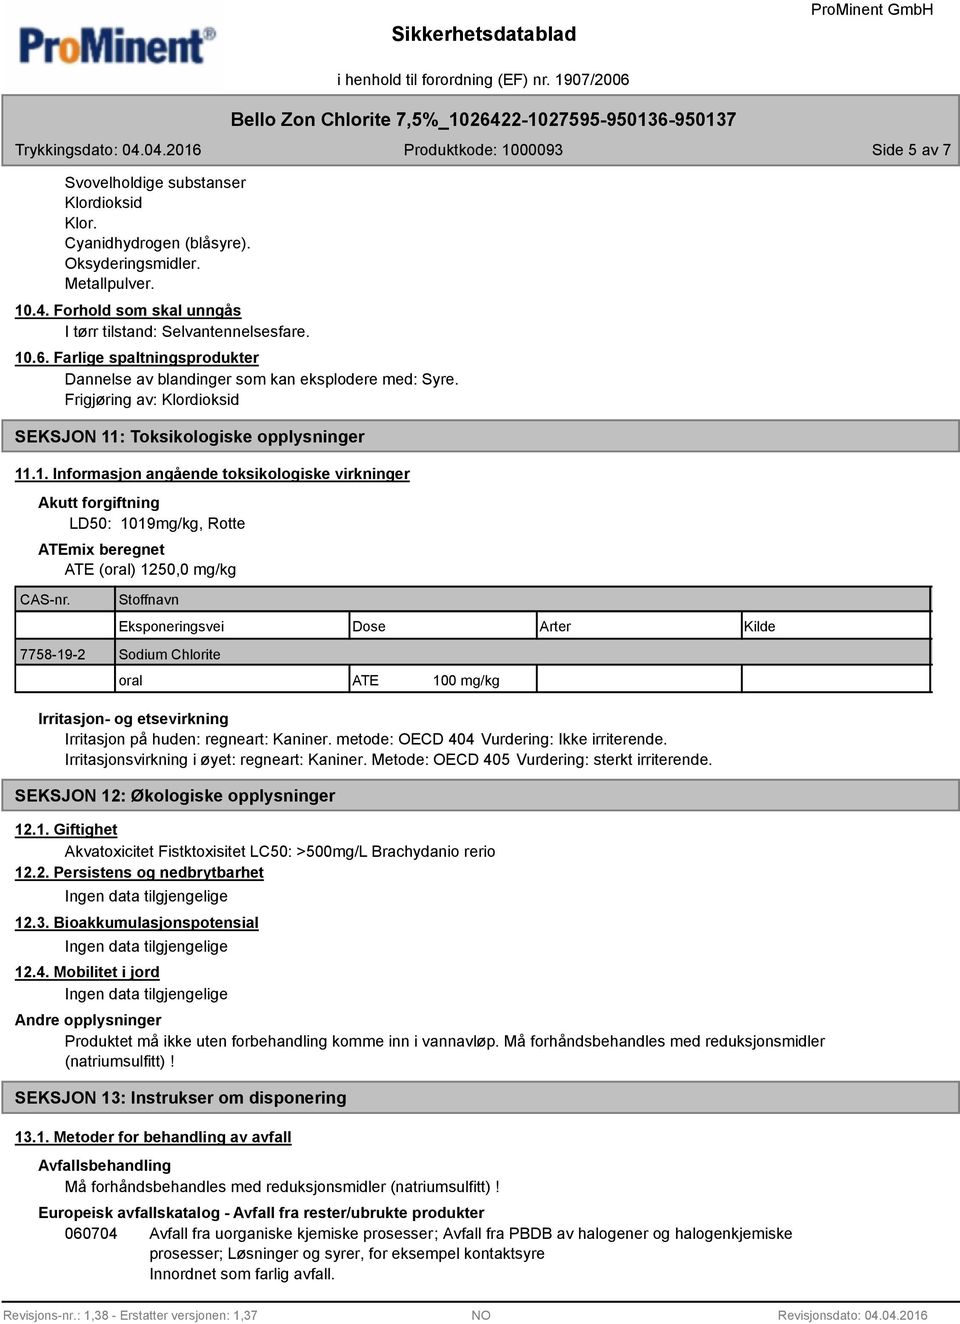 : Toksikologiske opplysninger 11.1. Informasjon angående toksikologiske virkninger Akutt forgiftning LD50: 1019mg/kg, Rotte ATEmix beregnet ATE (oral) 1250,0 mg/kg CAS-nr.